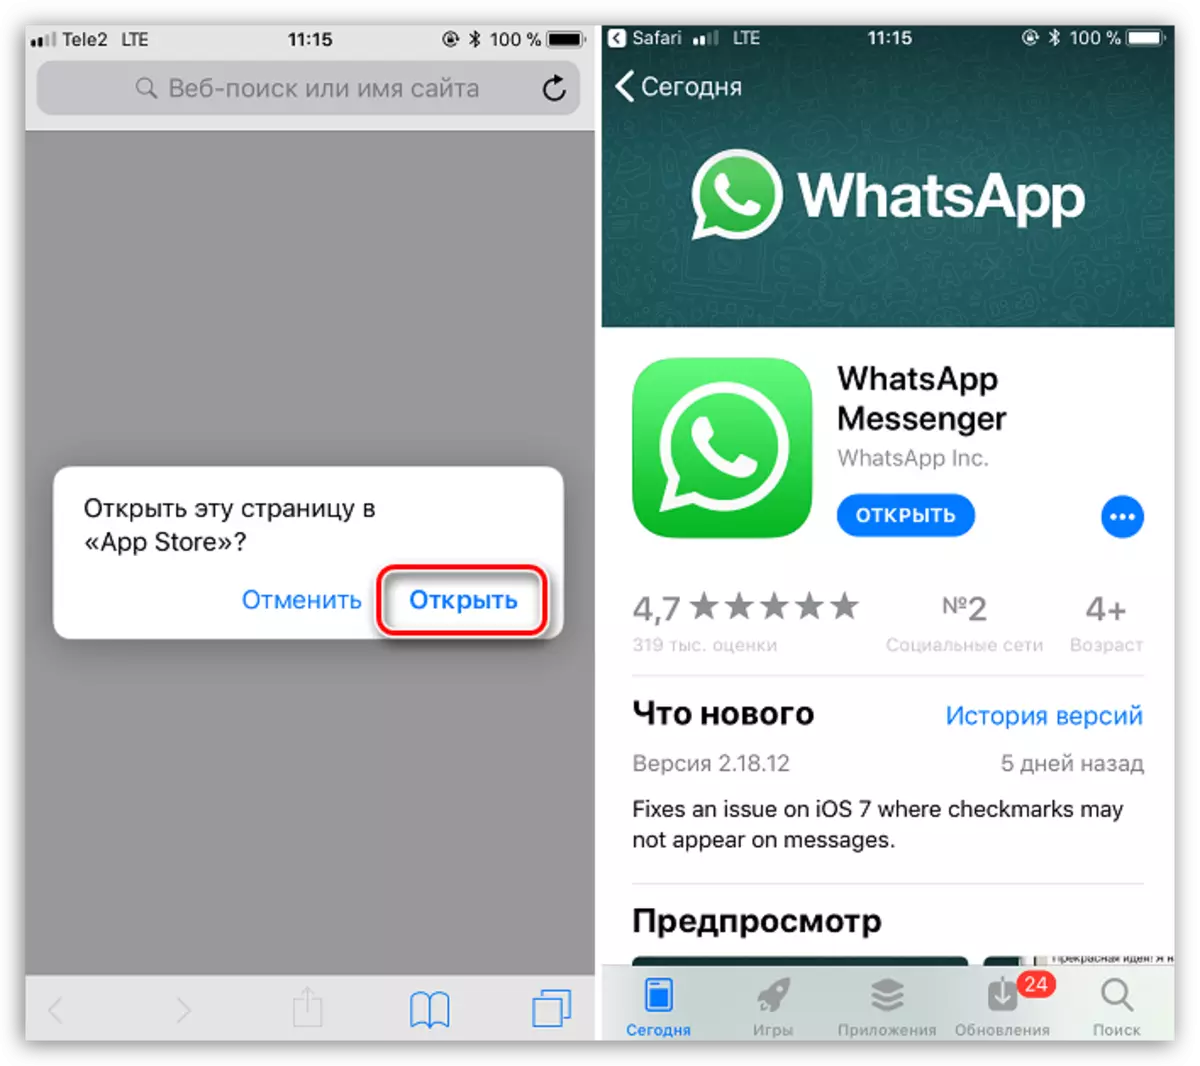 Membuka WhatsApp di App Store di iPhone